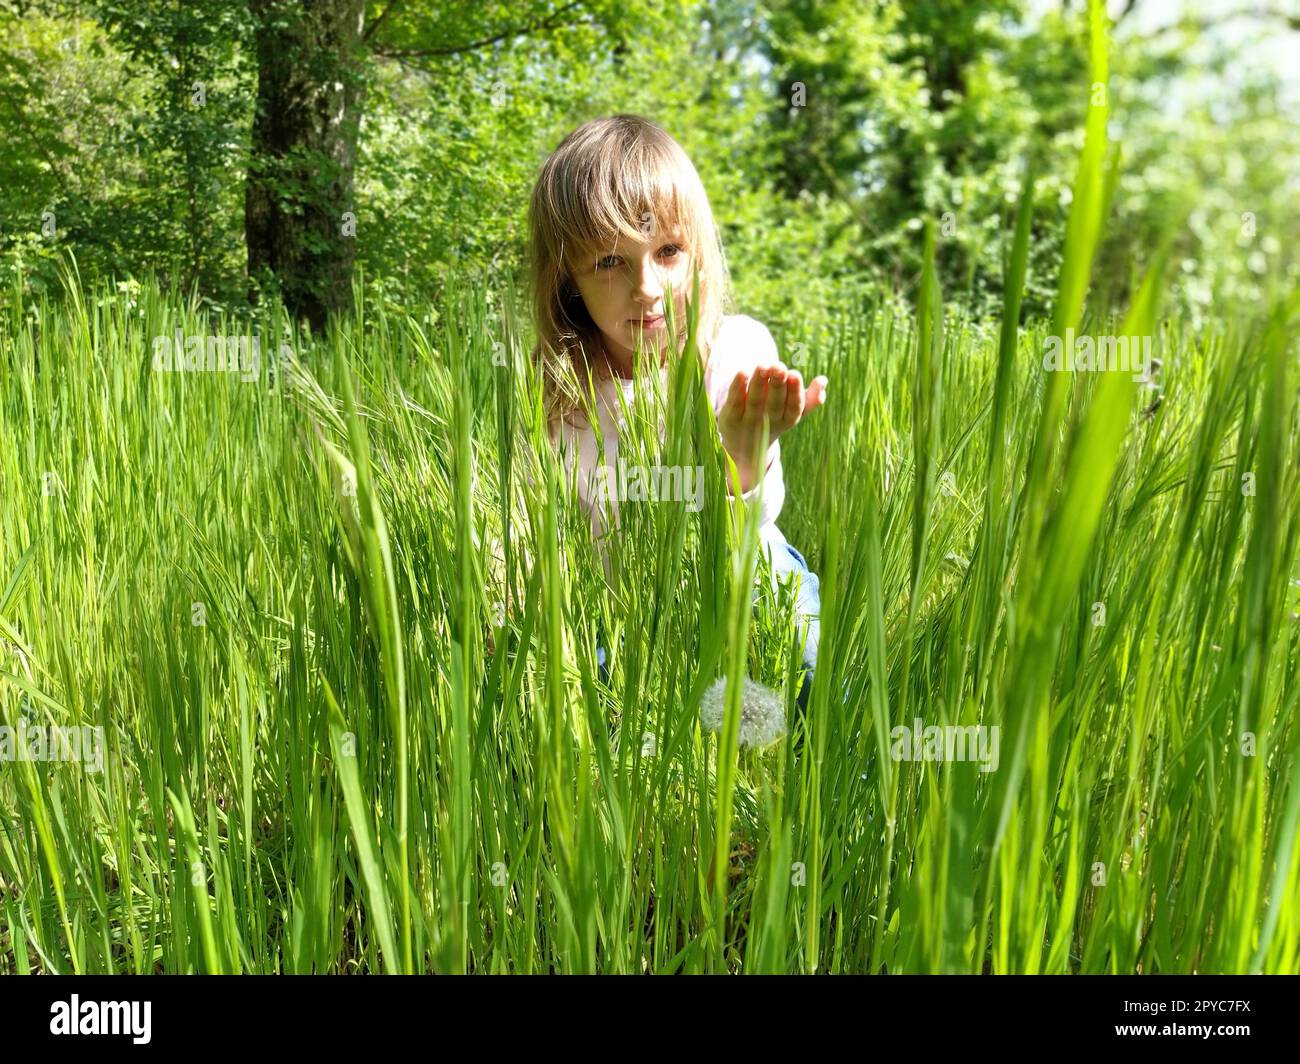 Mädchen im grünen Gras. Das Kind hat blonde, lange Haare und eine weiße Bluse. Das Konzept der Harmonie mit der Natur und der Pflege der Ökologie. Gesunder Lebensstil Stockfoto